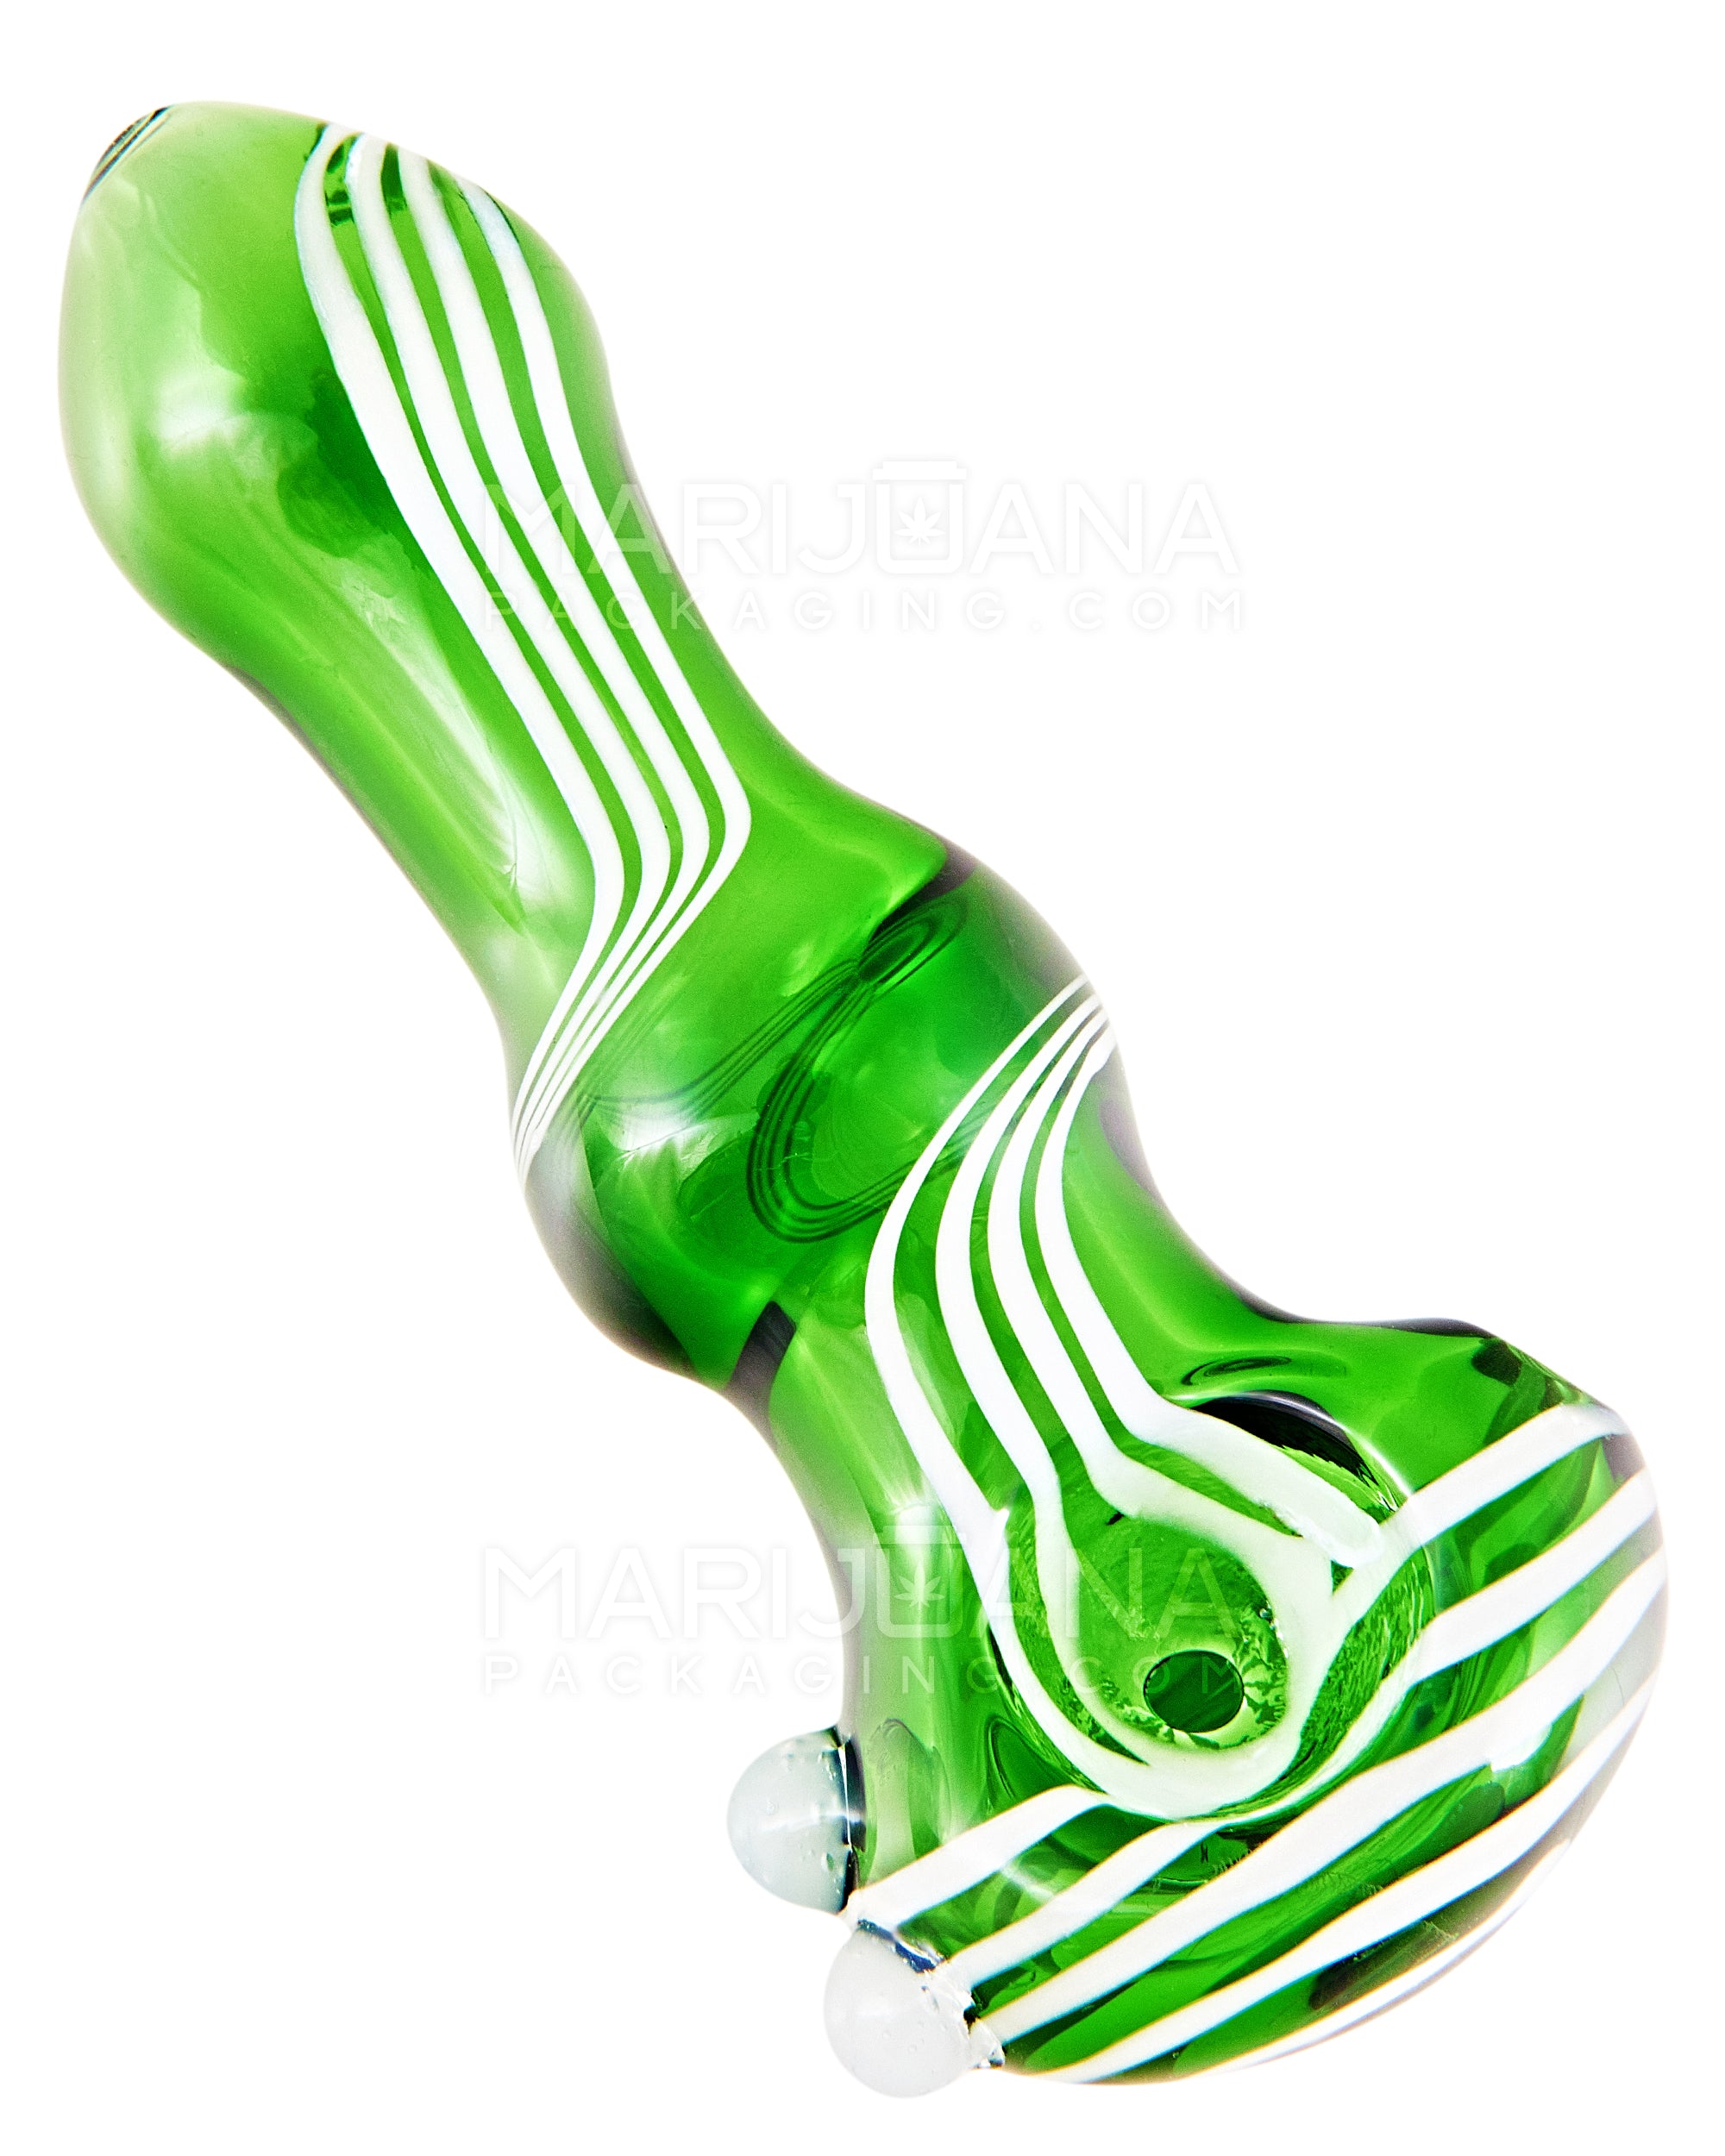 Swirl Bulged Spoon Hand Pipe w/ Triple Knockers | 3.5in Long - Glass - Green - 1